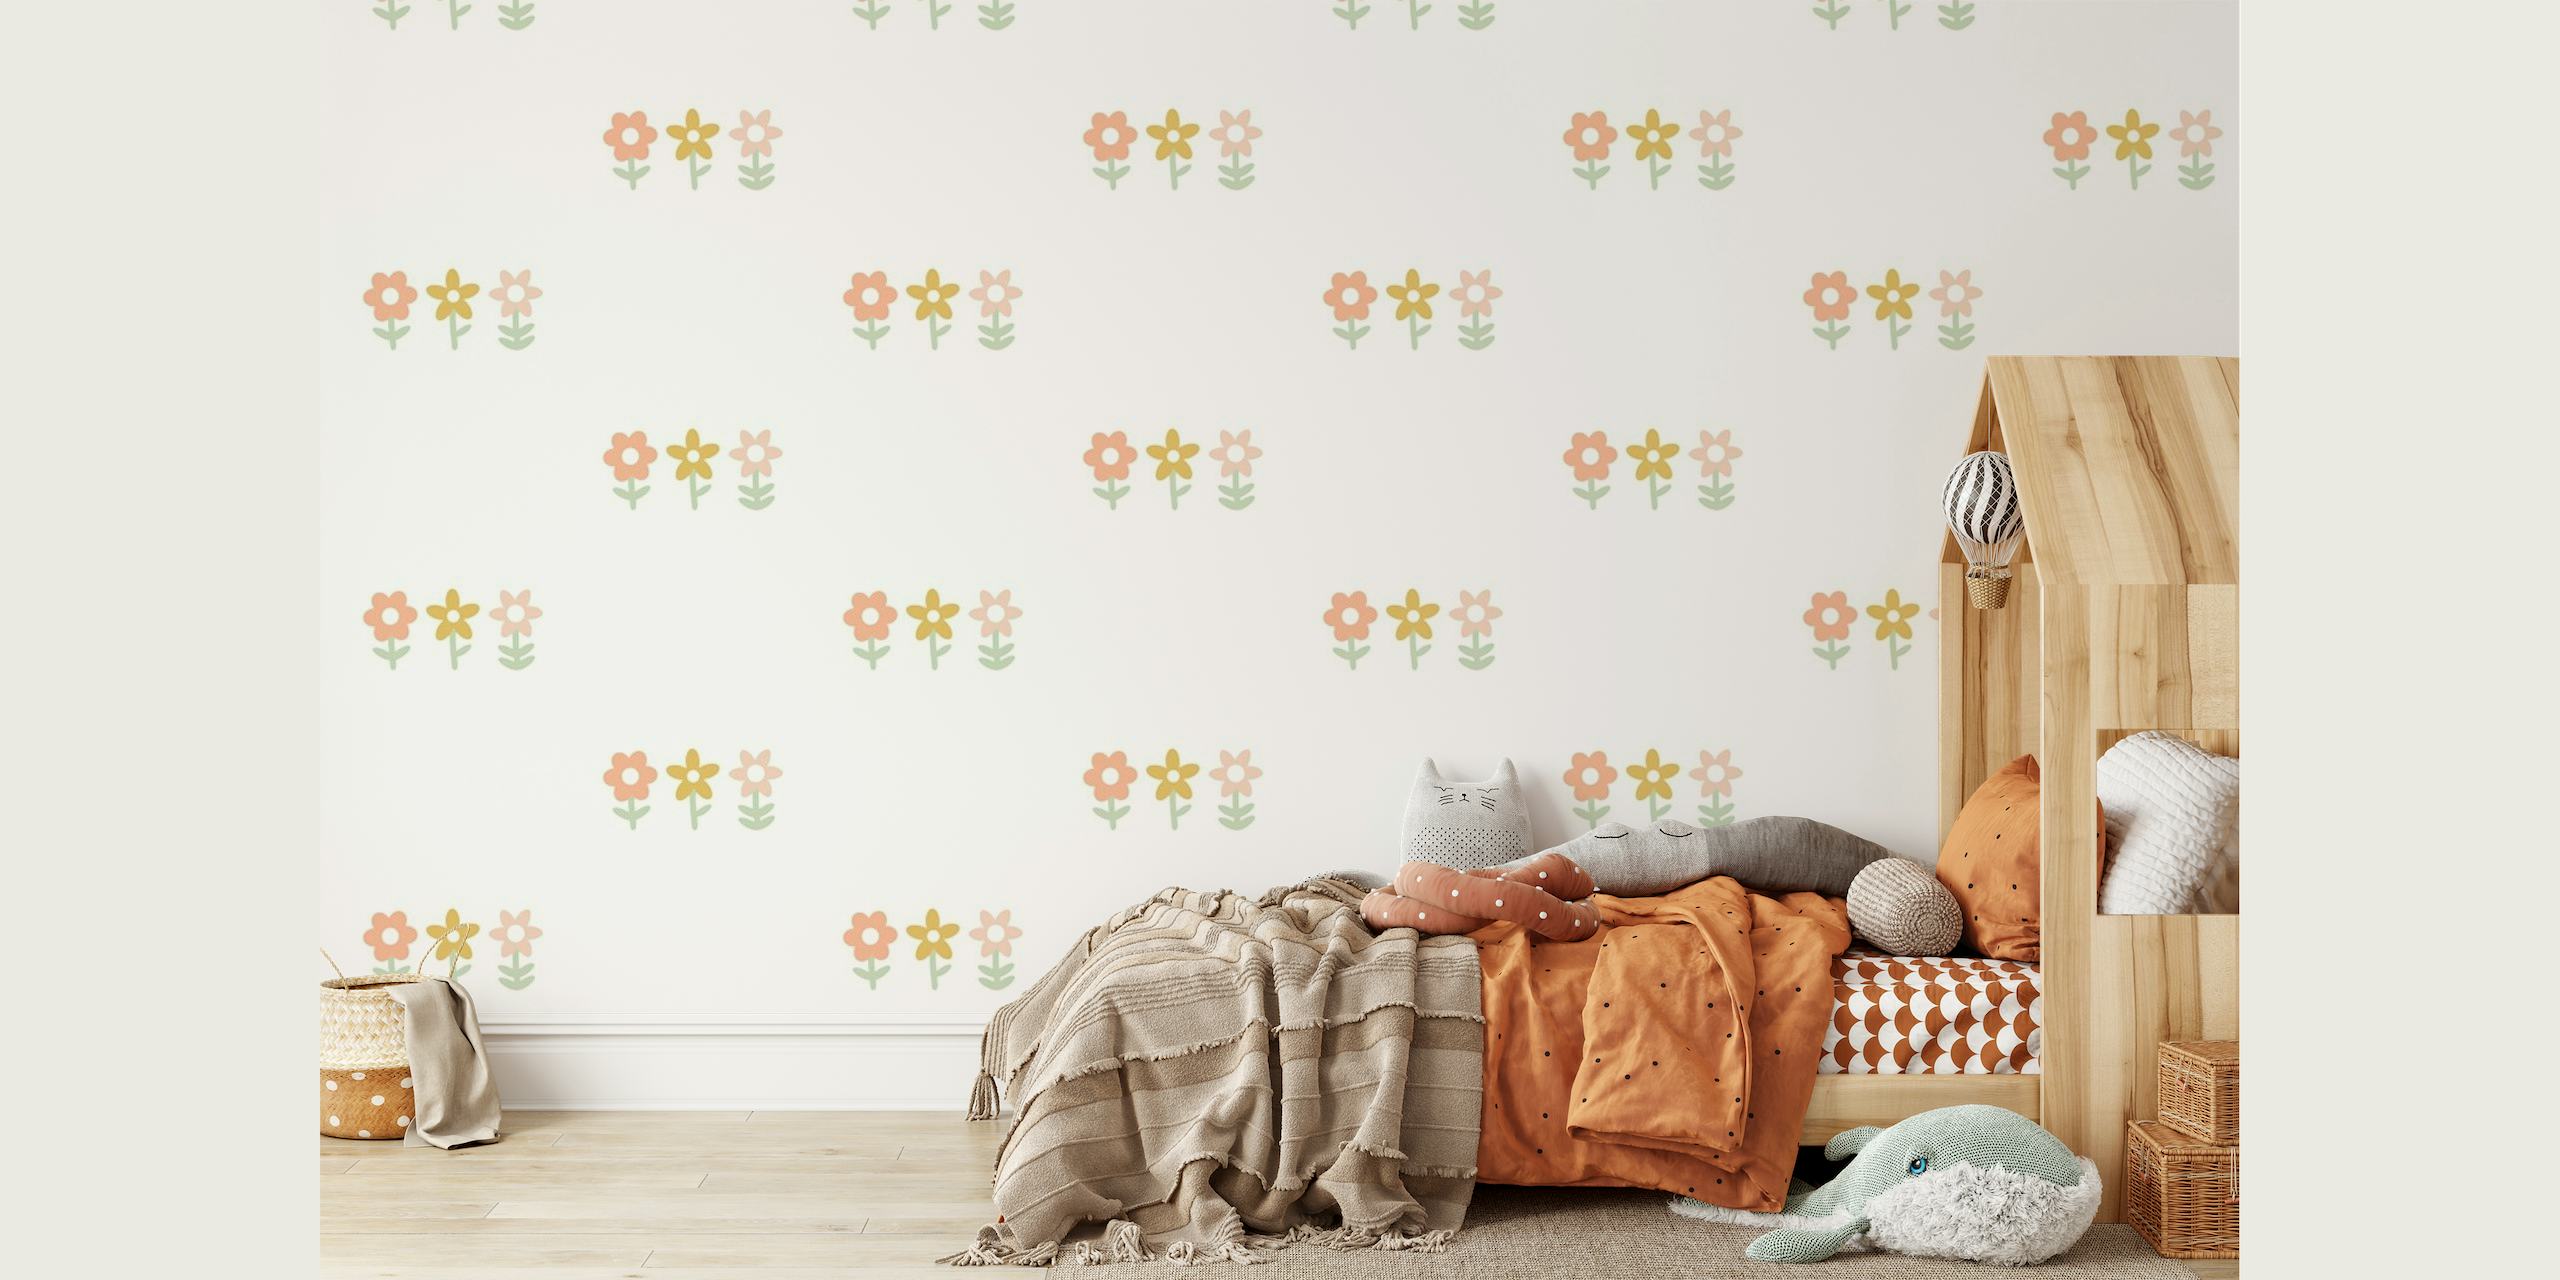 fotomural vinílico de parede com padrão floral estilo boho em tons neutros